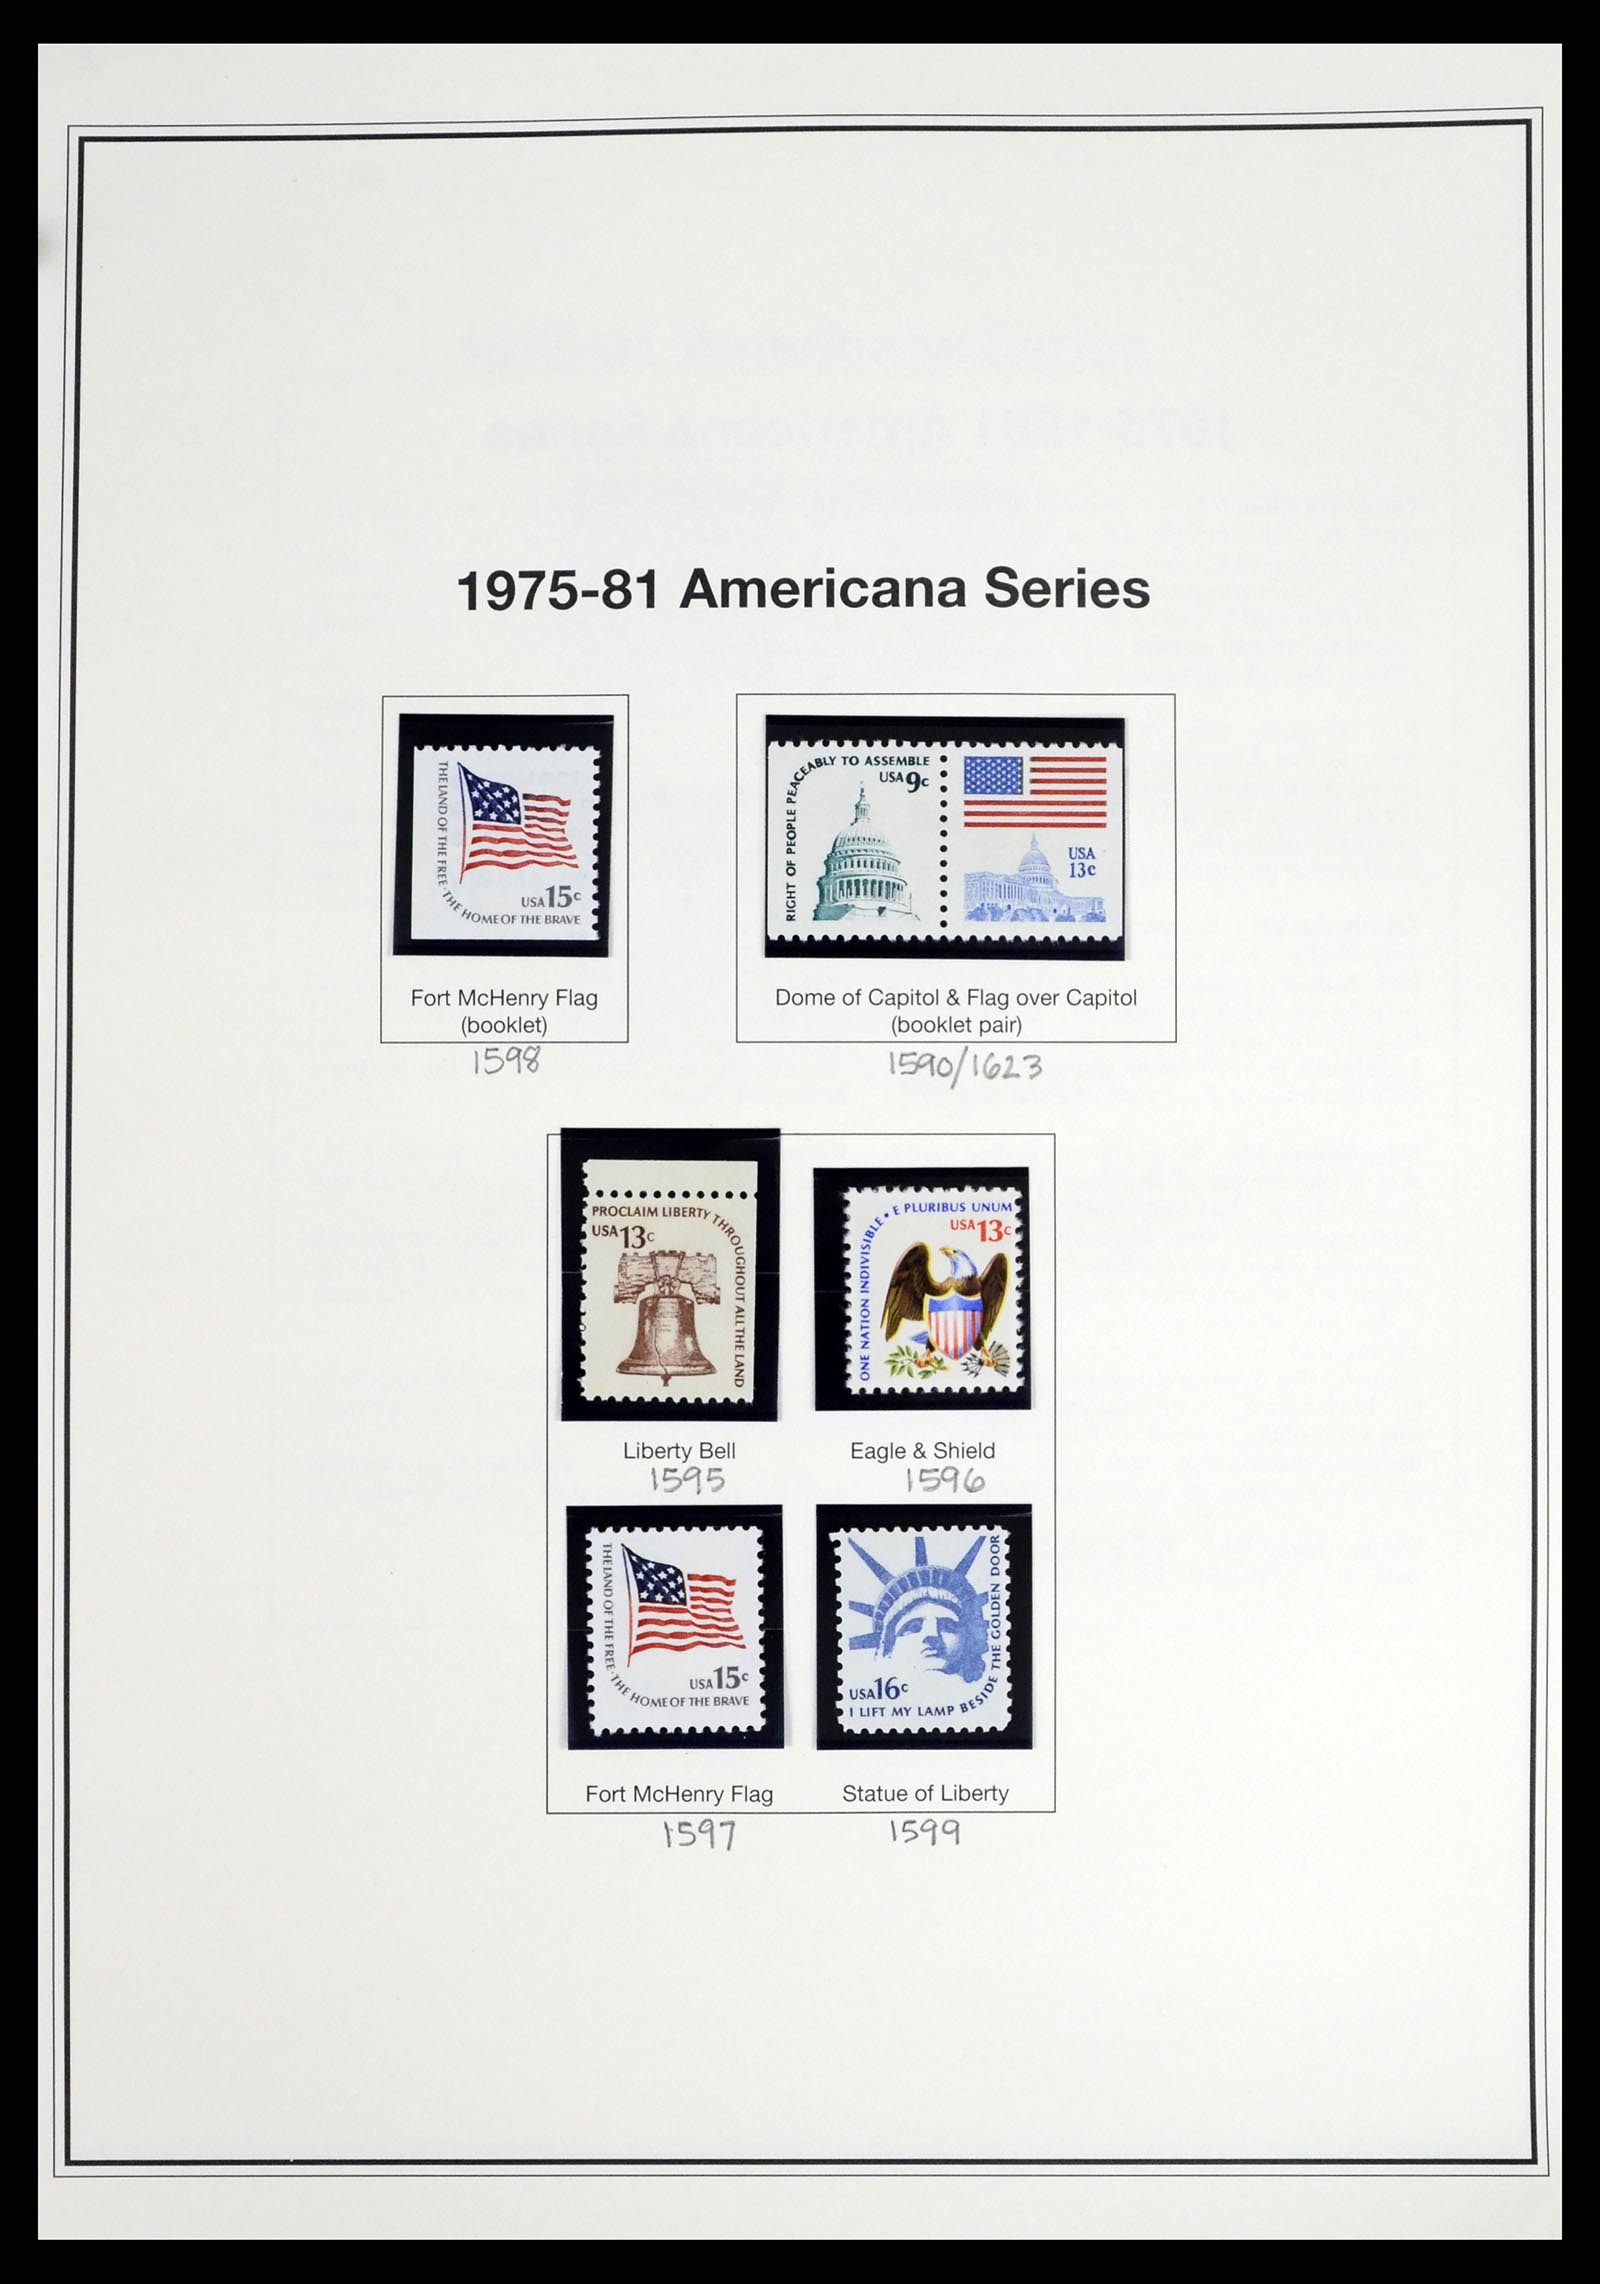 37193 025 - Stamp collection 37193 USA 1970-2020!